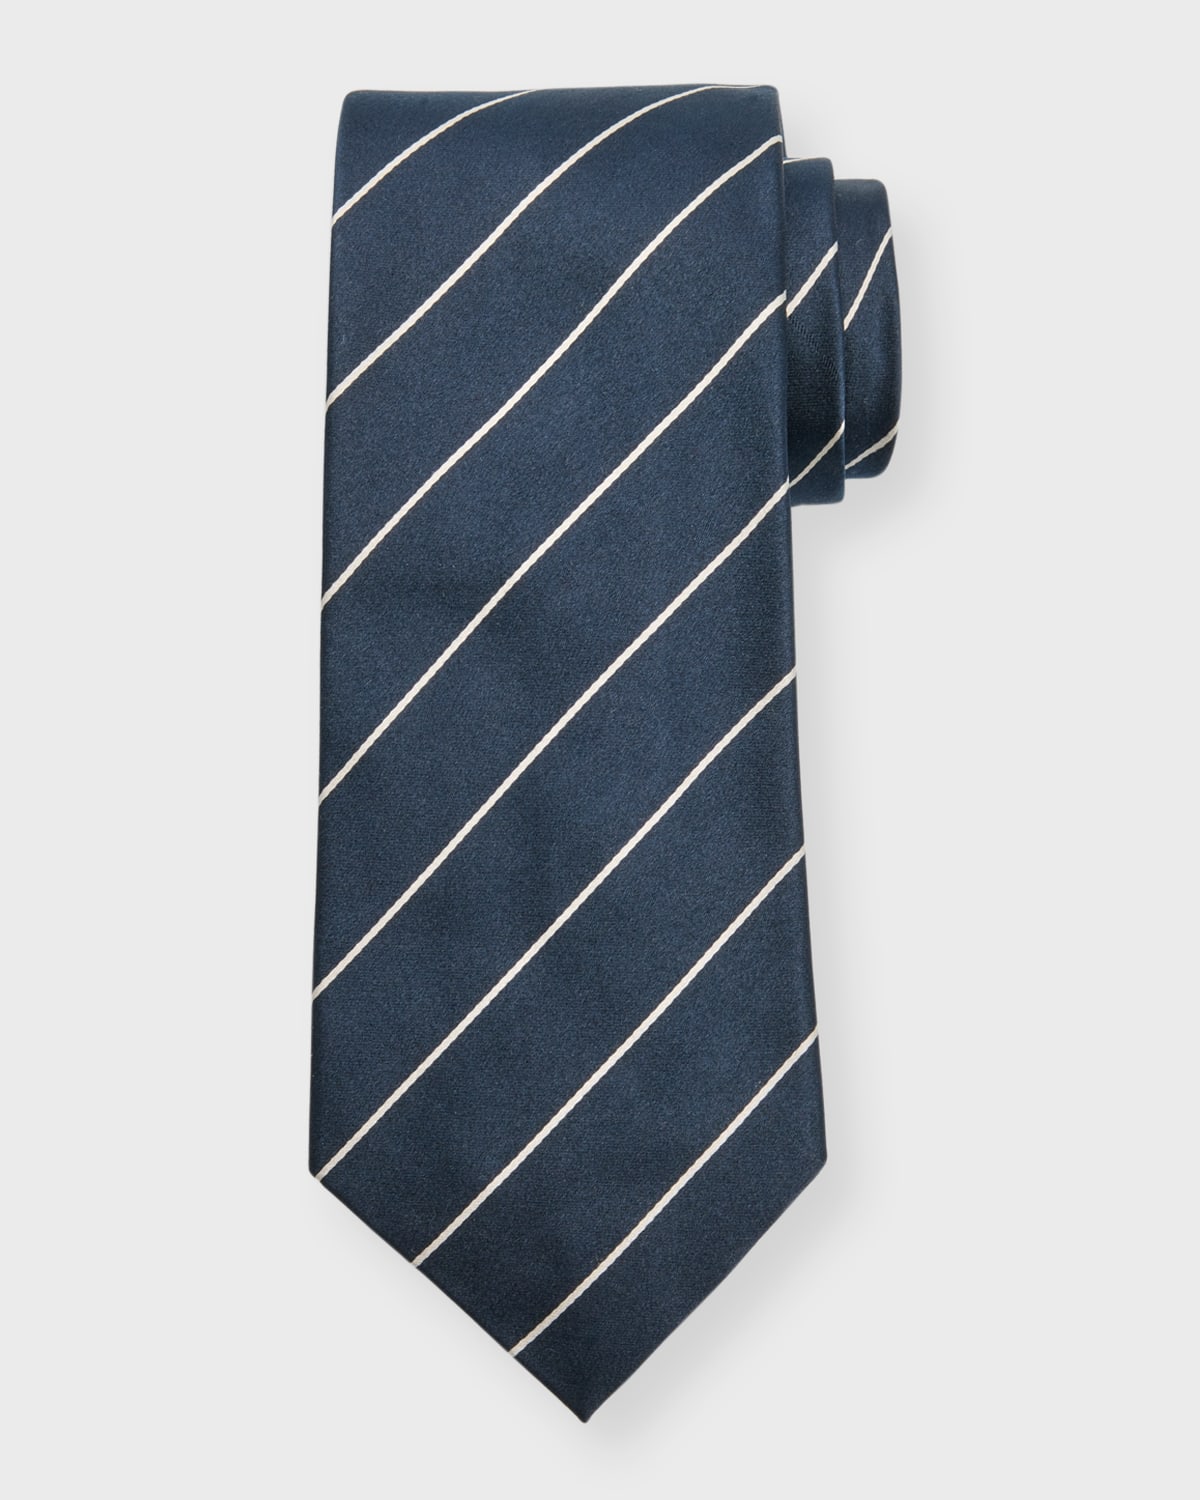 Men's Striped Silk Tie